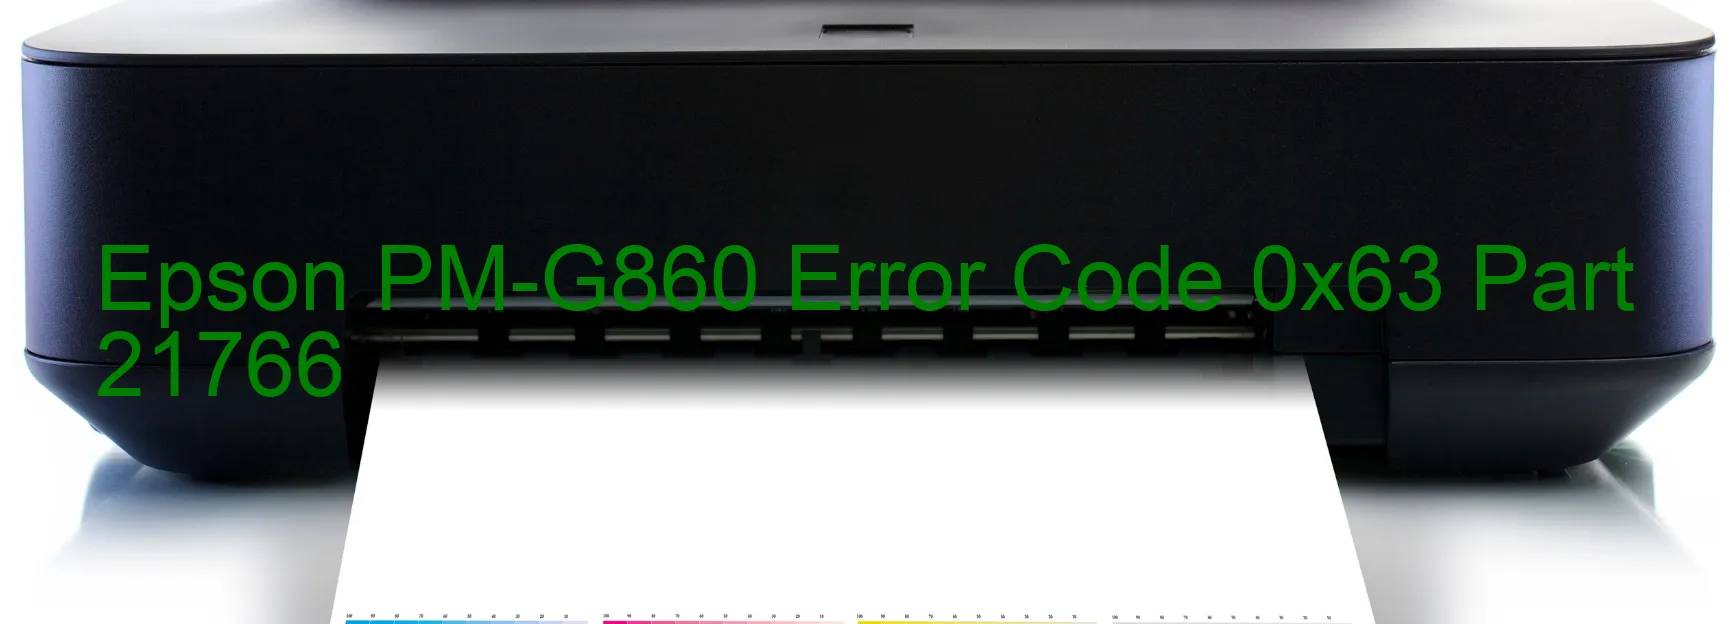 Epson PM-G860 Error 0x63